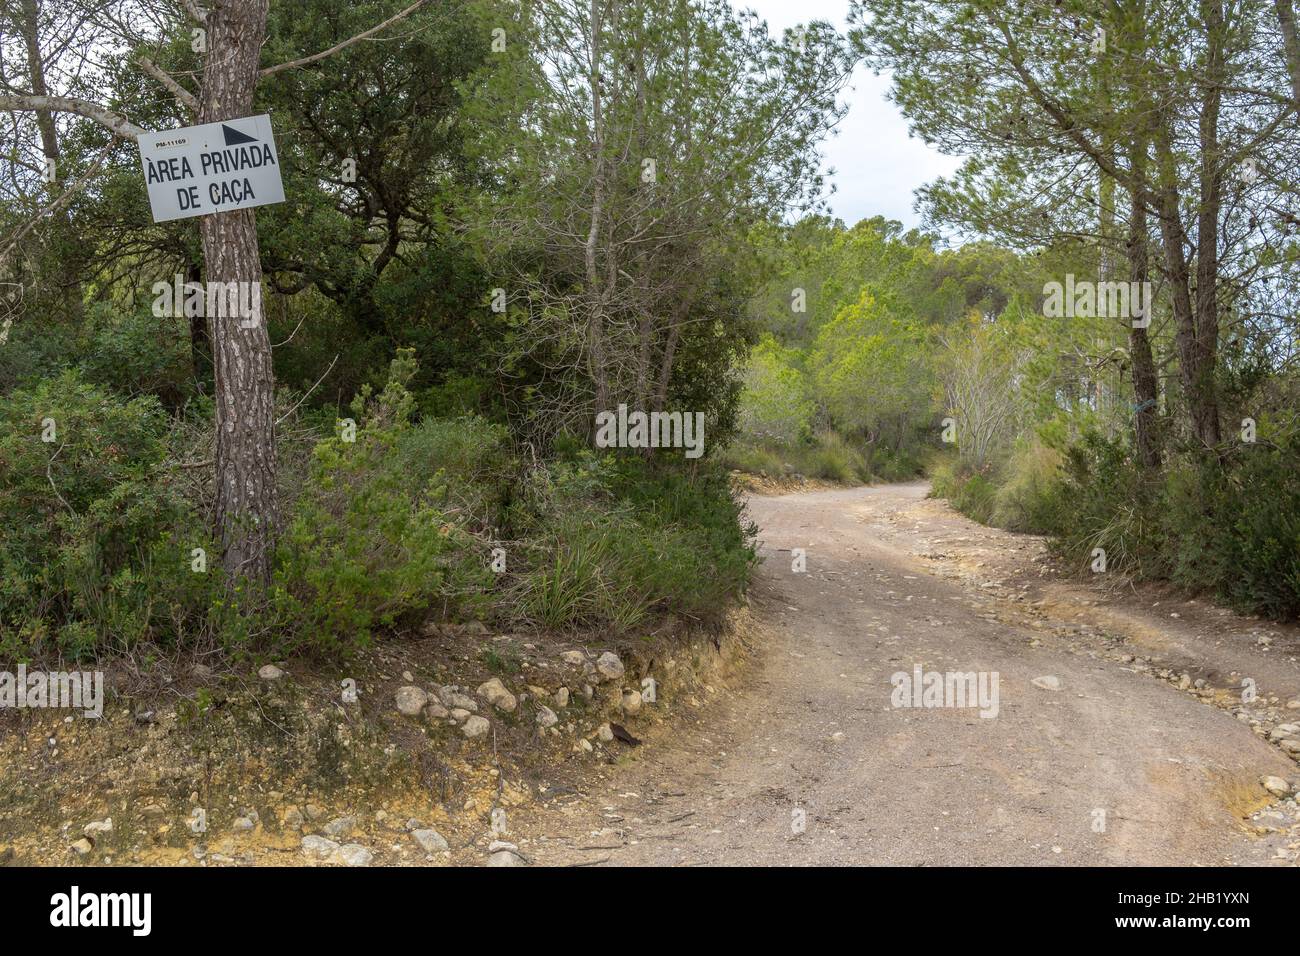 Zona di caccia privata scritta in catalano, all'ingresso di una foresta mediterranea, all'interno dell'isola di Maiorca, Spagna Foto Stock